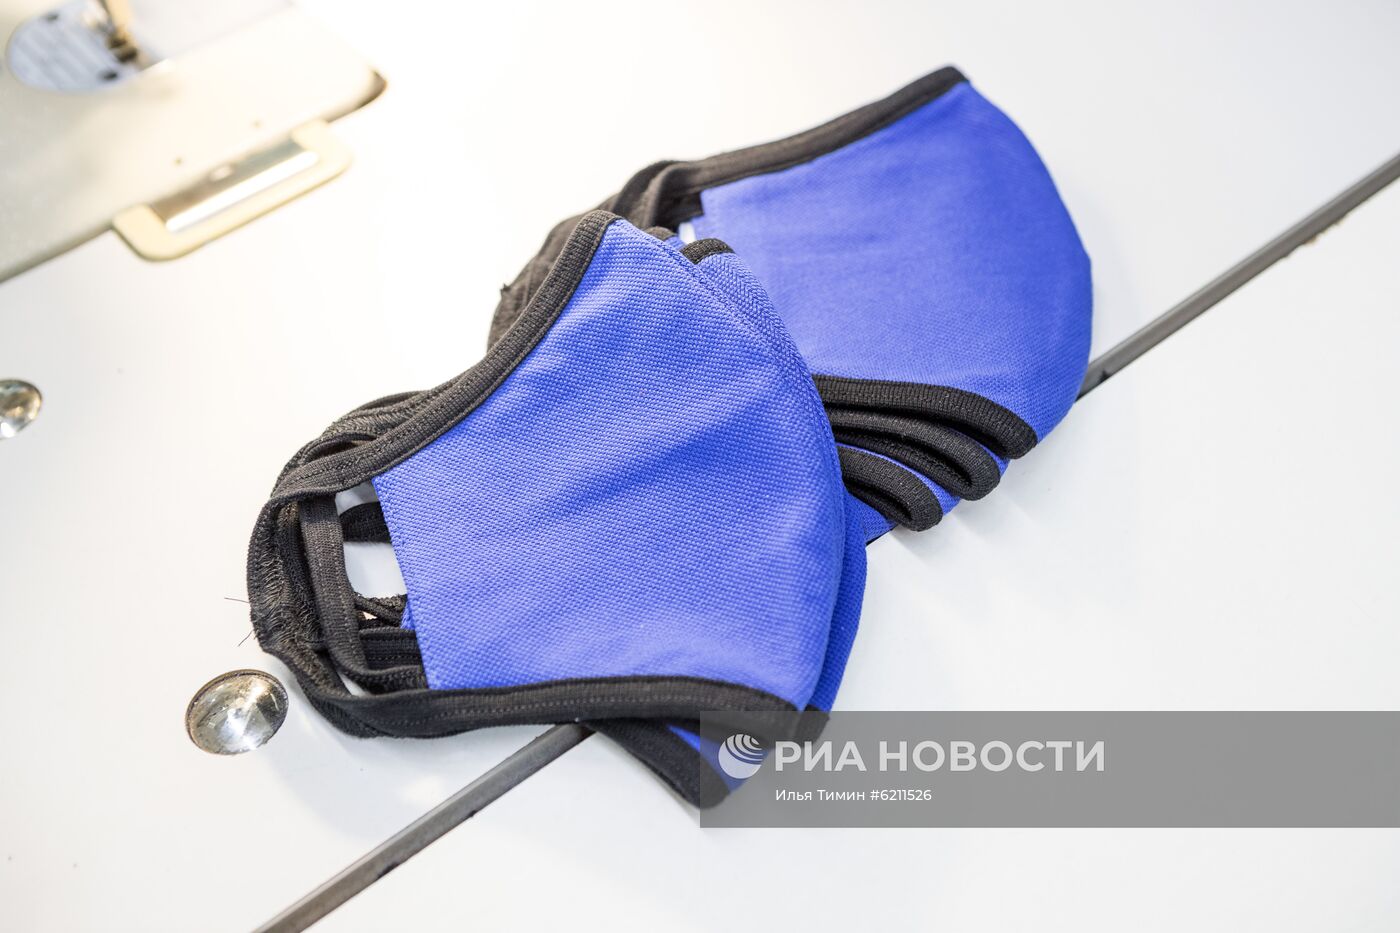 Производство медицинских и бытовых защитных масок в Карелии